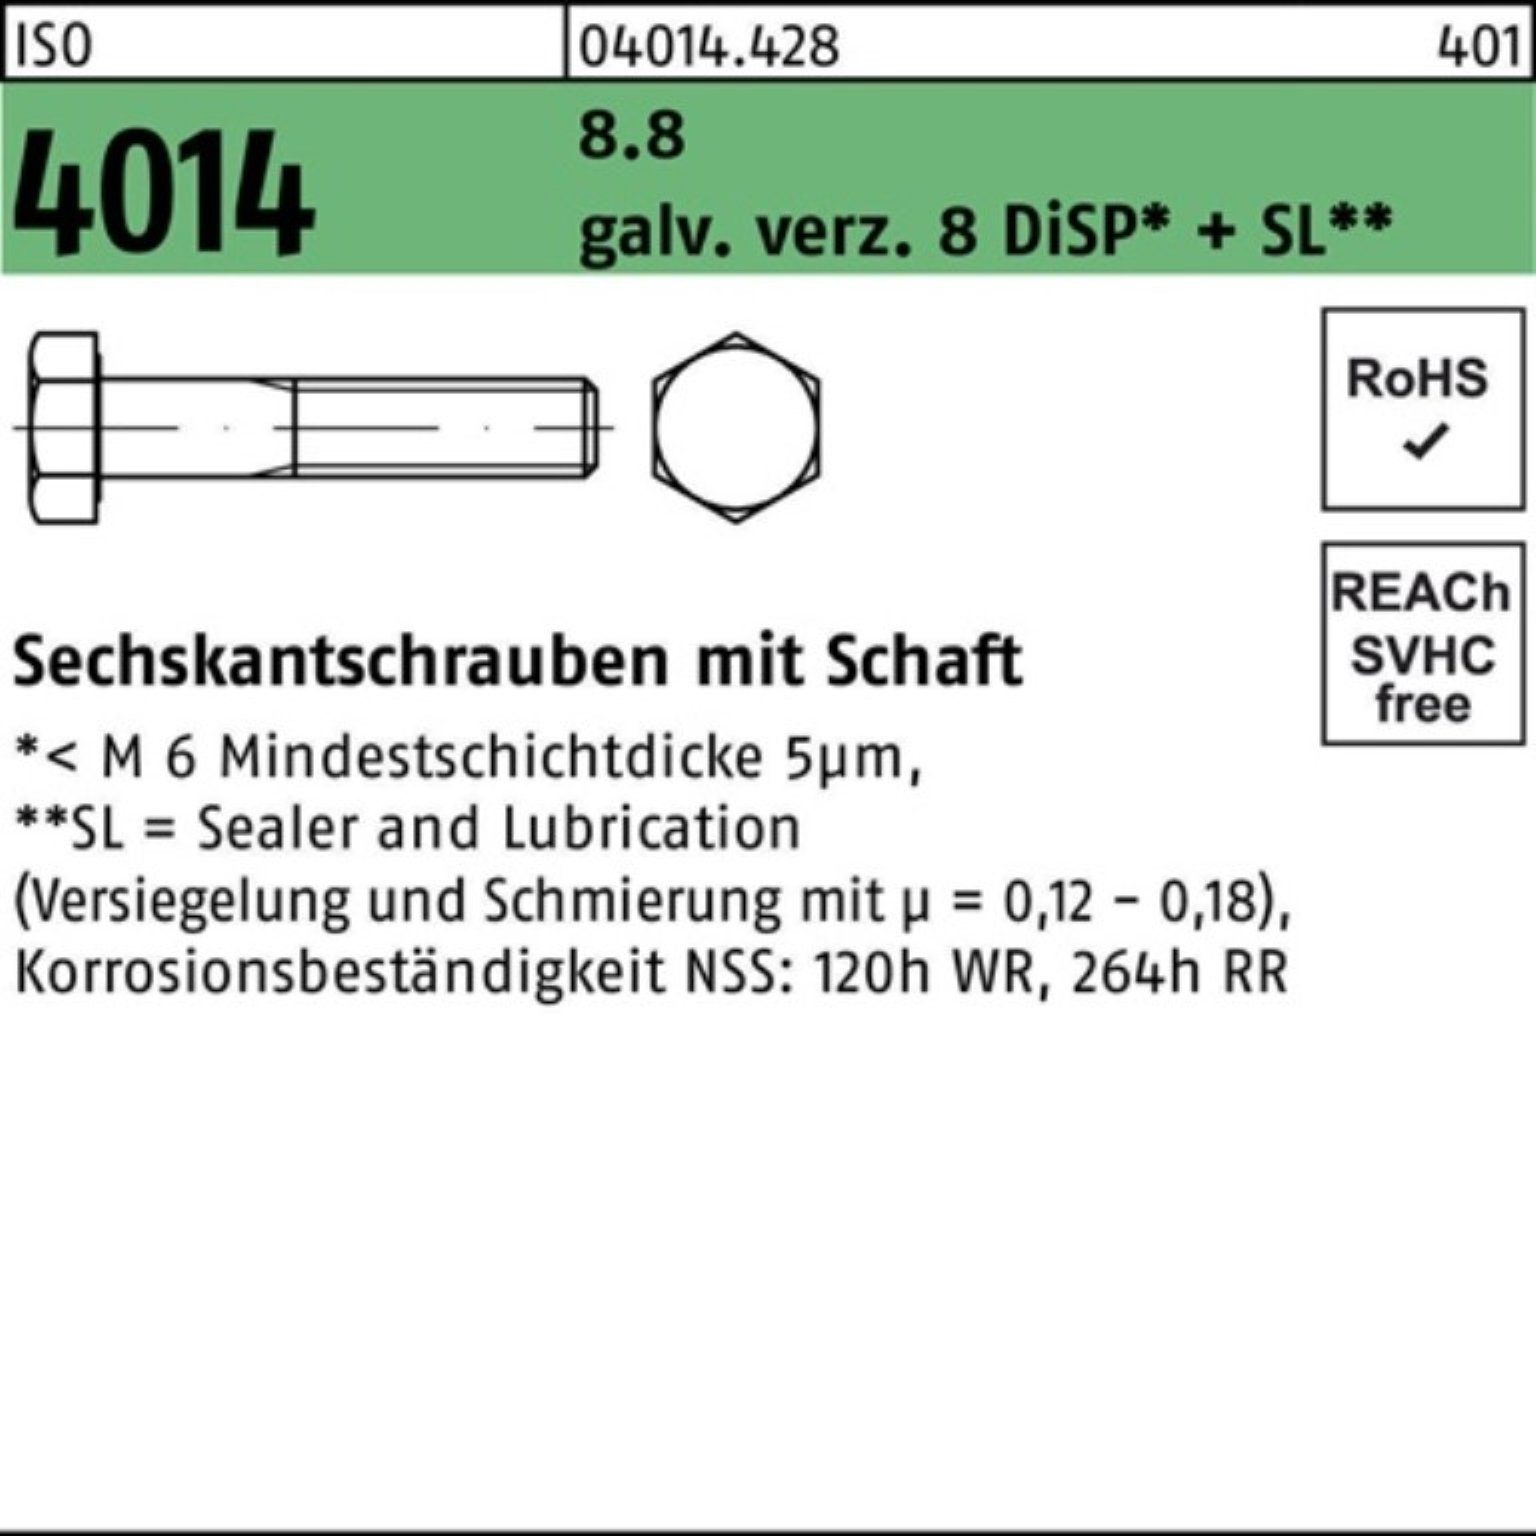 Bufab Sechskantschraube Schaft 100er ISO 8.8 galv.verz. 4014 M16x260 8 Pack Sechskantschraube